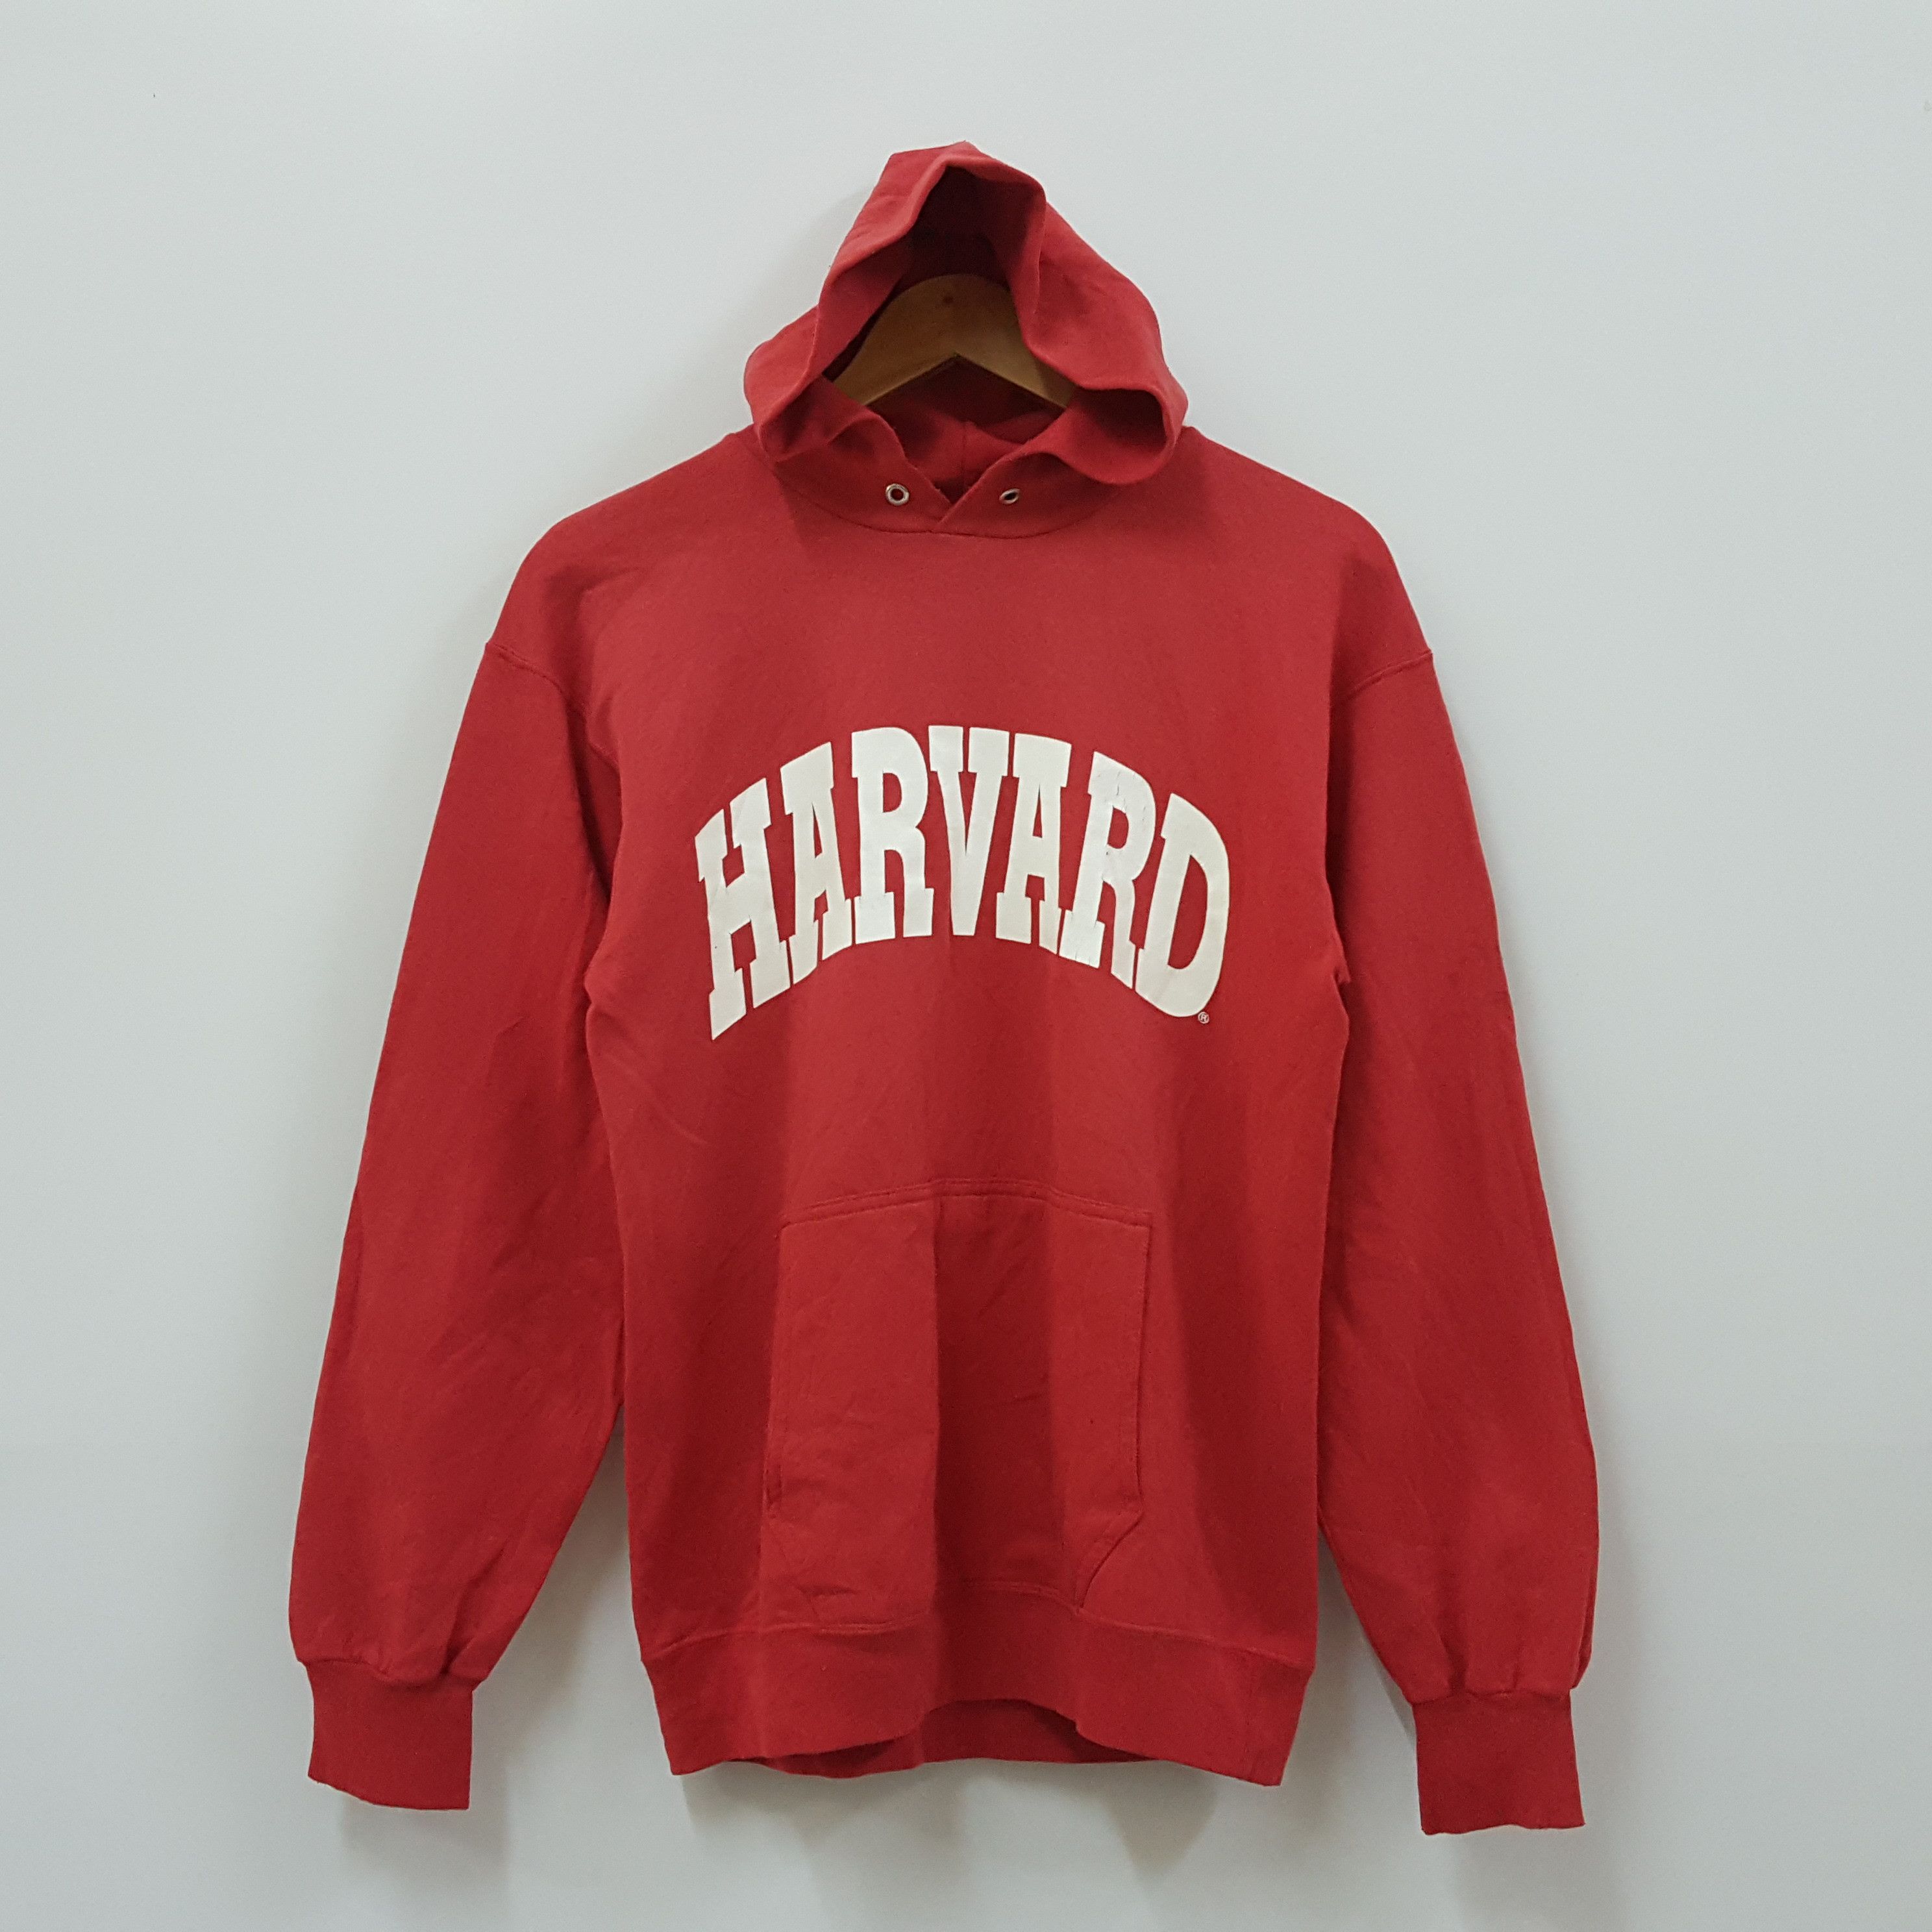 Harvard Vintage 80's HARVARD red hoodies Size US M / EU 48-50 / 2 - 1 Preview